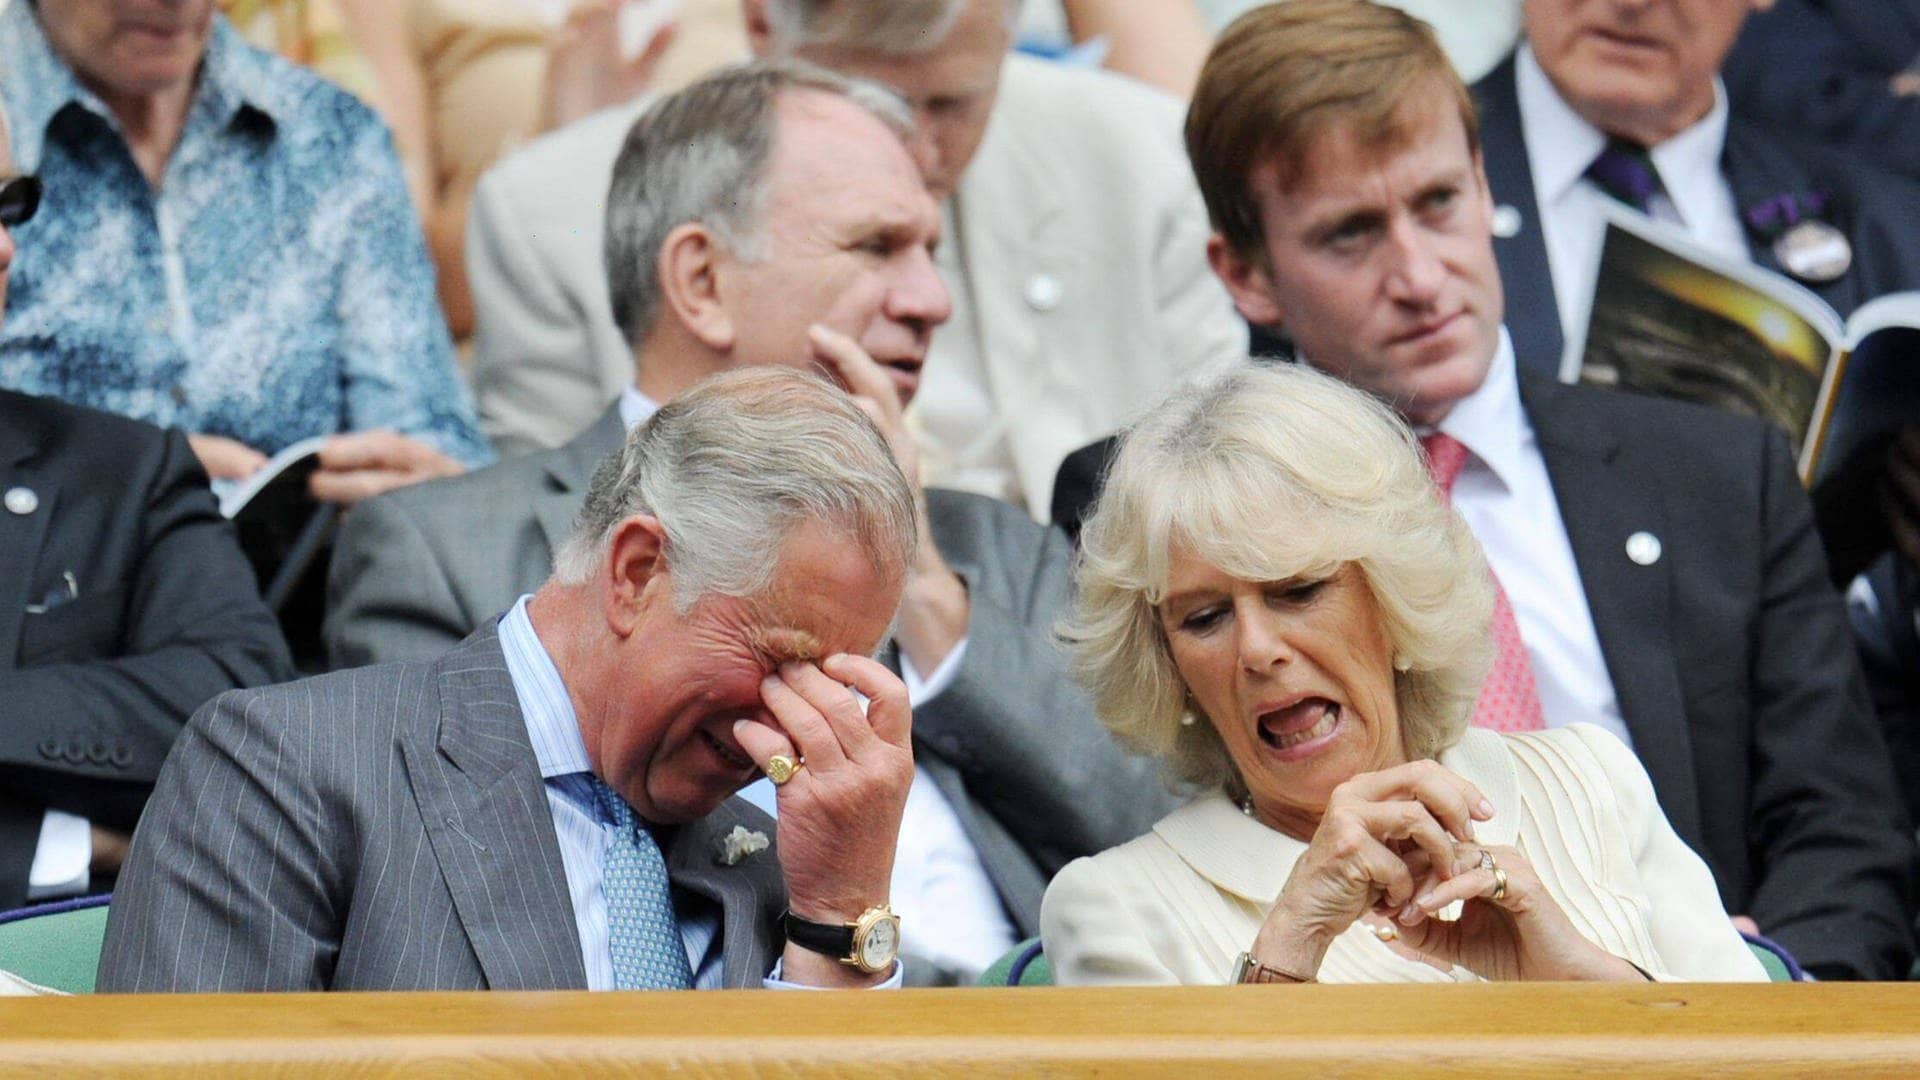 König Charles und Camilla sitzen nebeneinander und lachen. (Foto: IMAGO, IMAGO / Shutterstock)